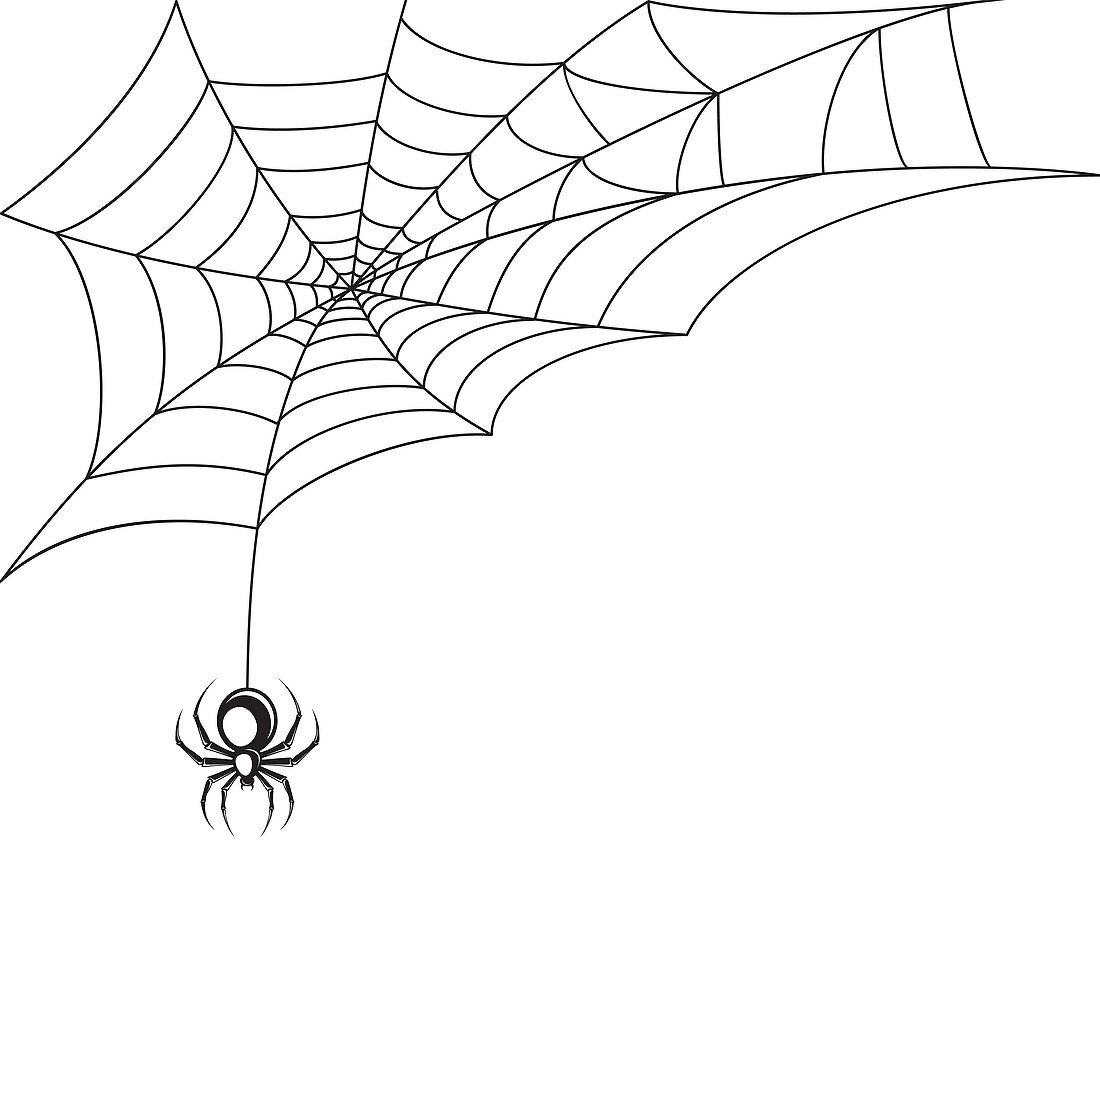 Spider, illustration